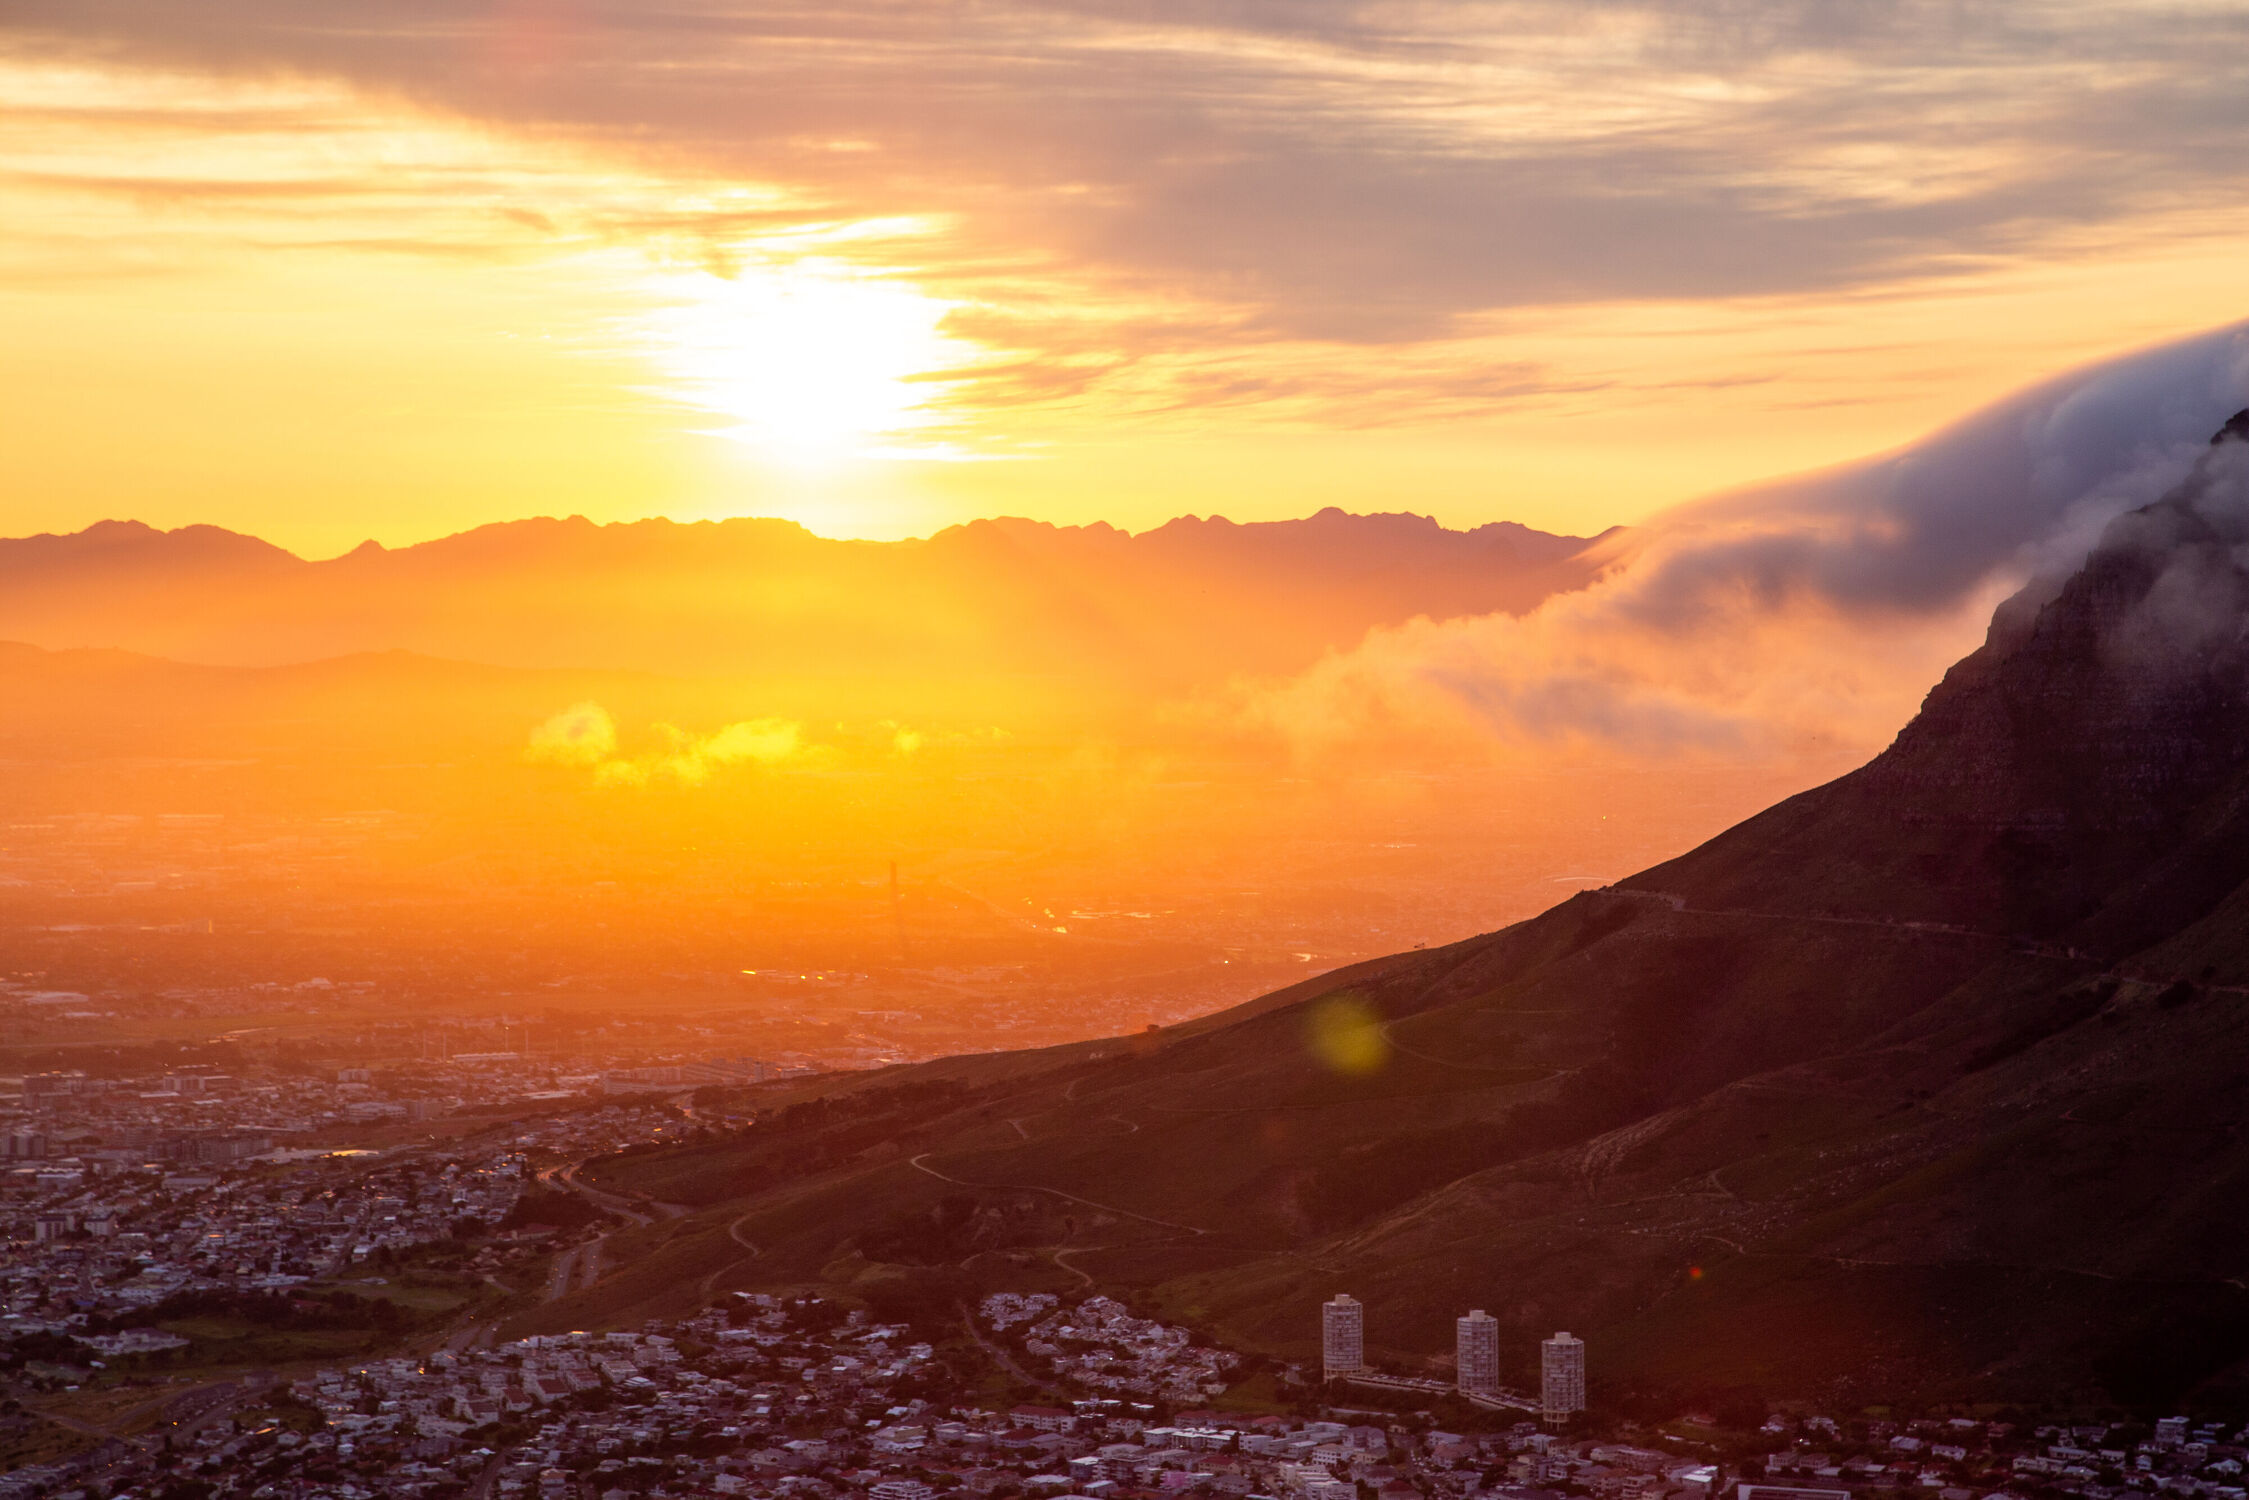 Bild mit Orange, Gelb, Wolken, Sonnenaufgang, Sonne, sunrise, Capetown, Kapstadt